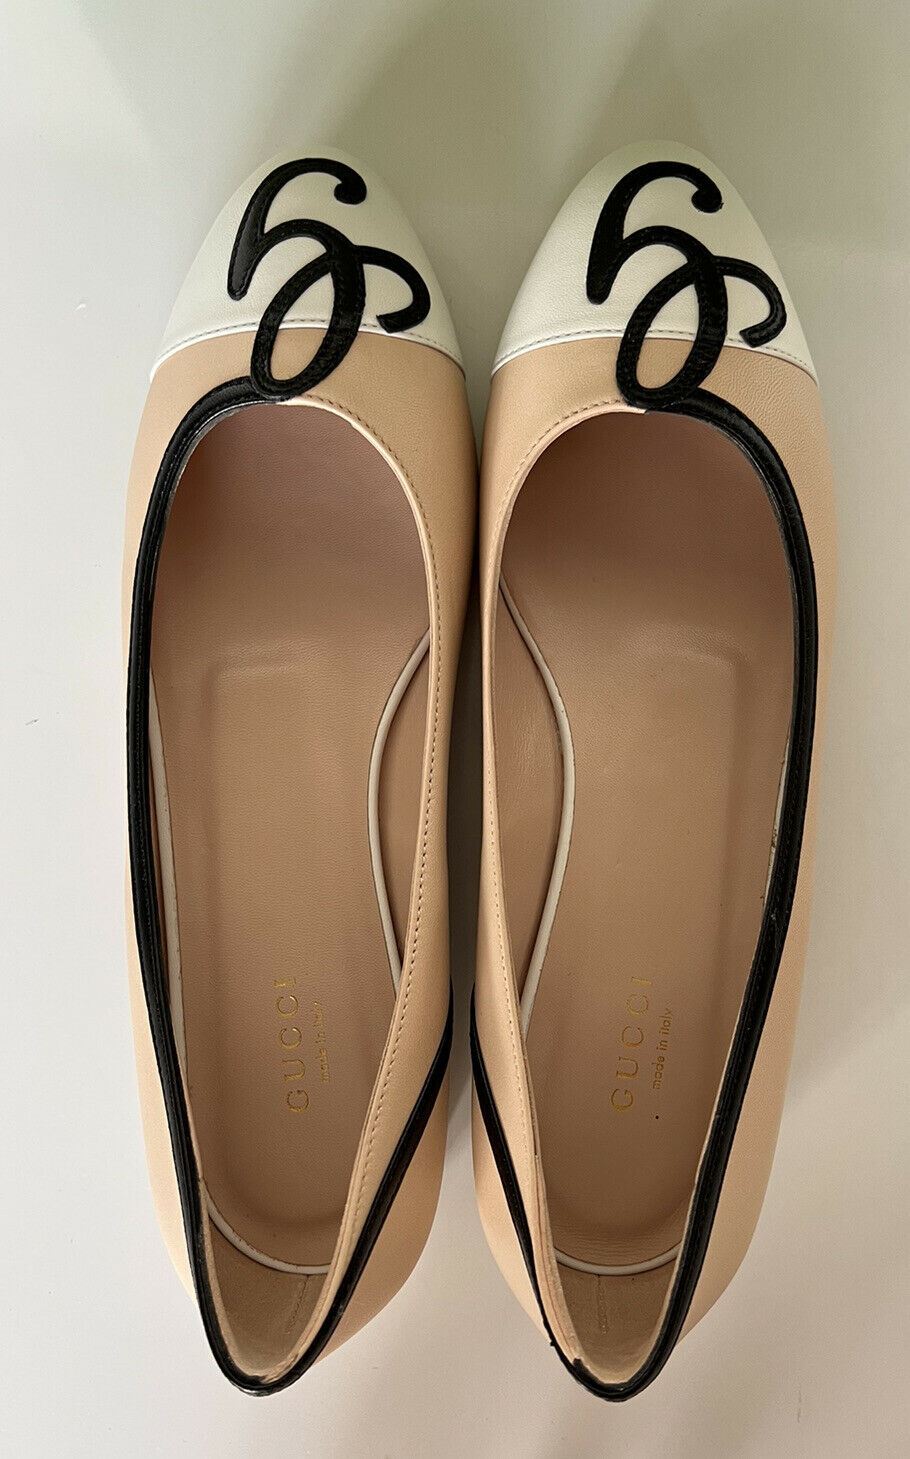 Женские кожаные туфли-слипоны Gucci на плоской подошве бежевого/белого цвета стоимостью 750 долларов США 9,5 США (39,5 ЕС) 658904